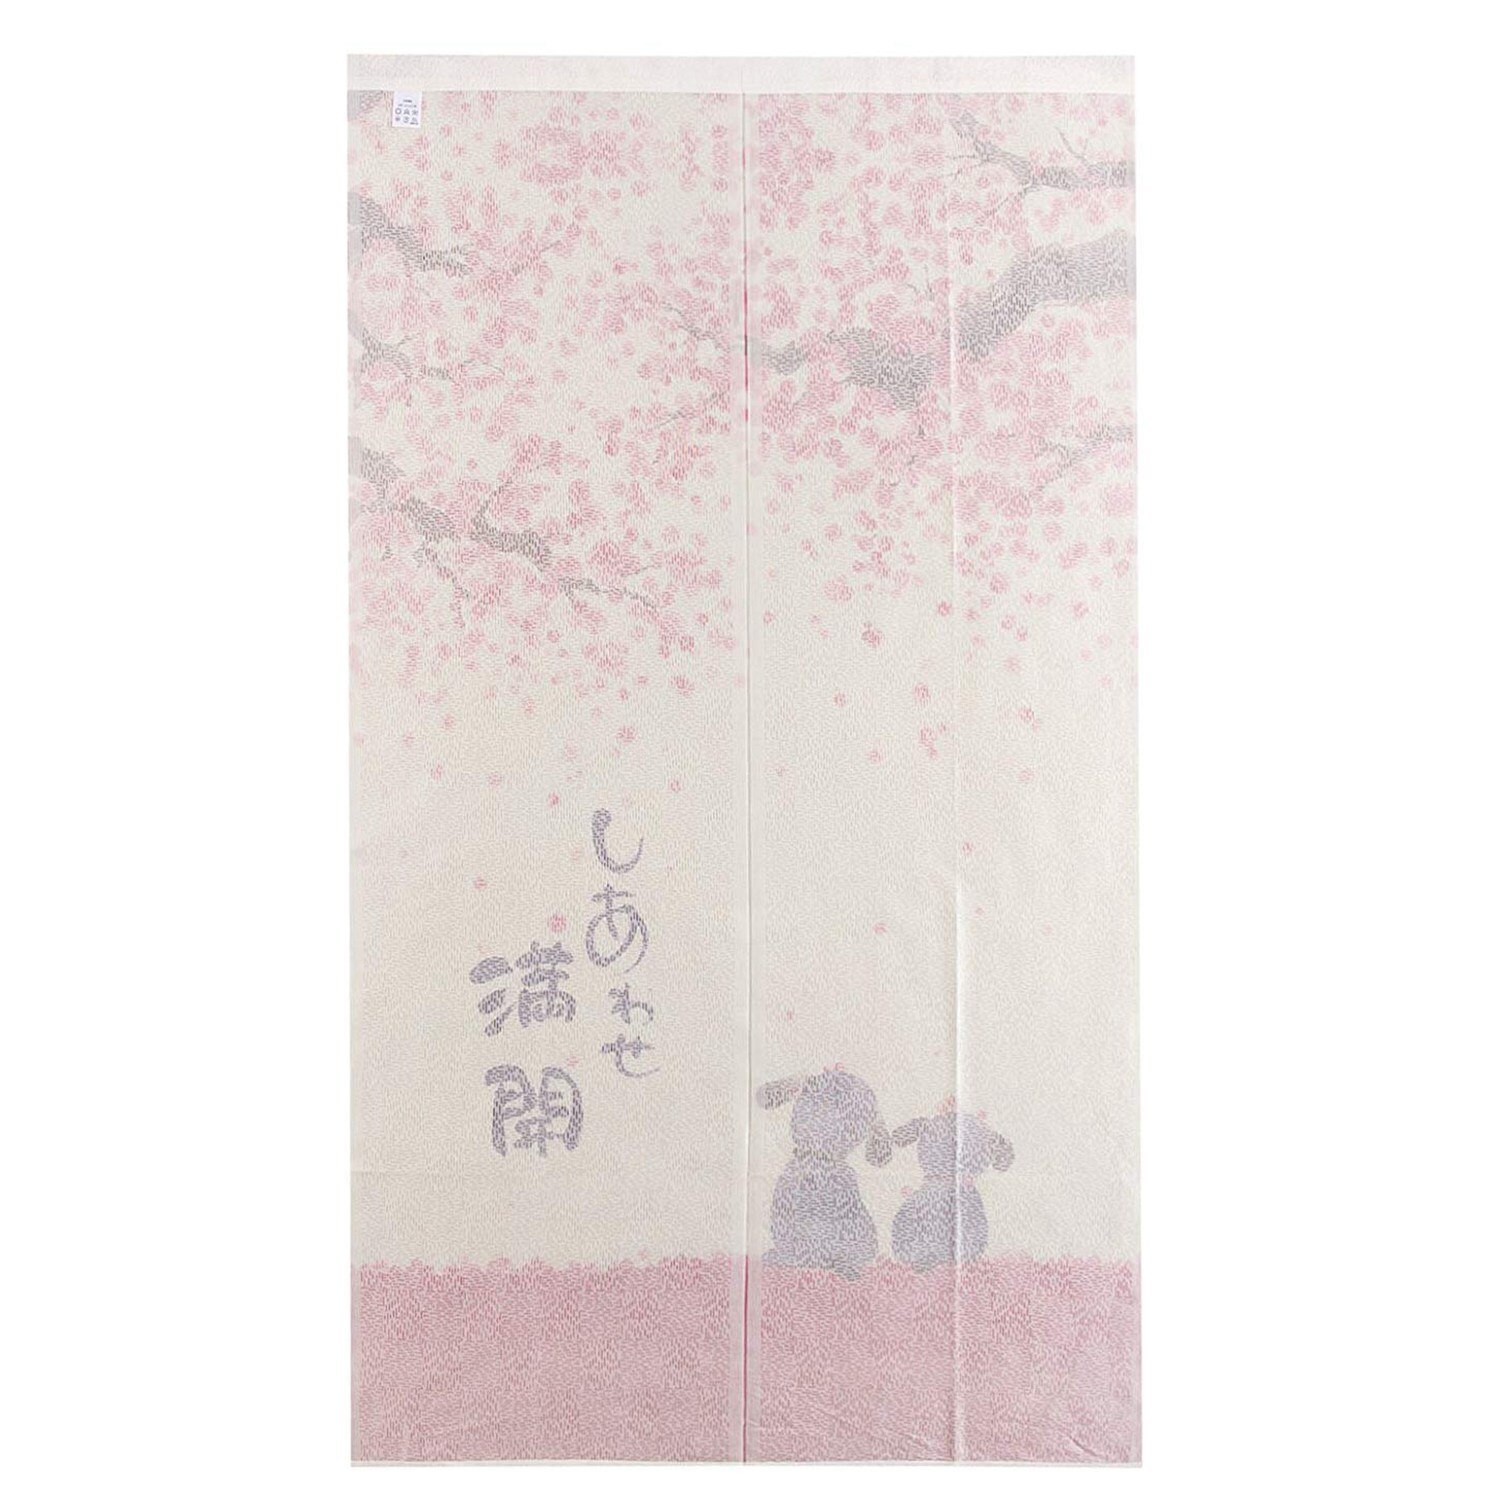 Praktisk boutique døråbningsgardin i japansk stil 85 x 150cm glade hunde kirsebærblomst